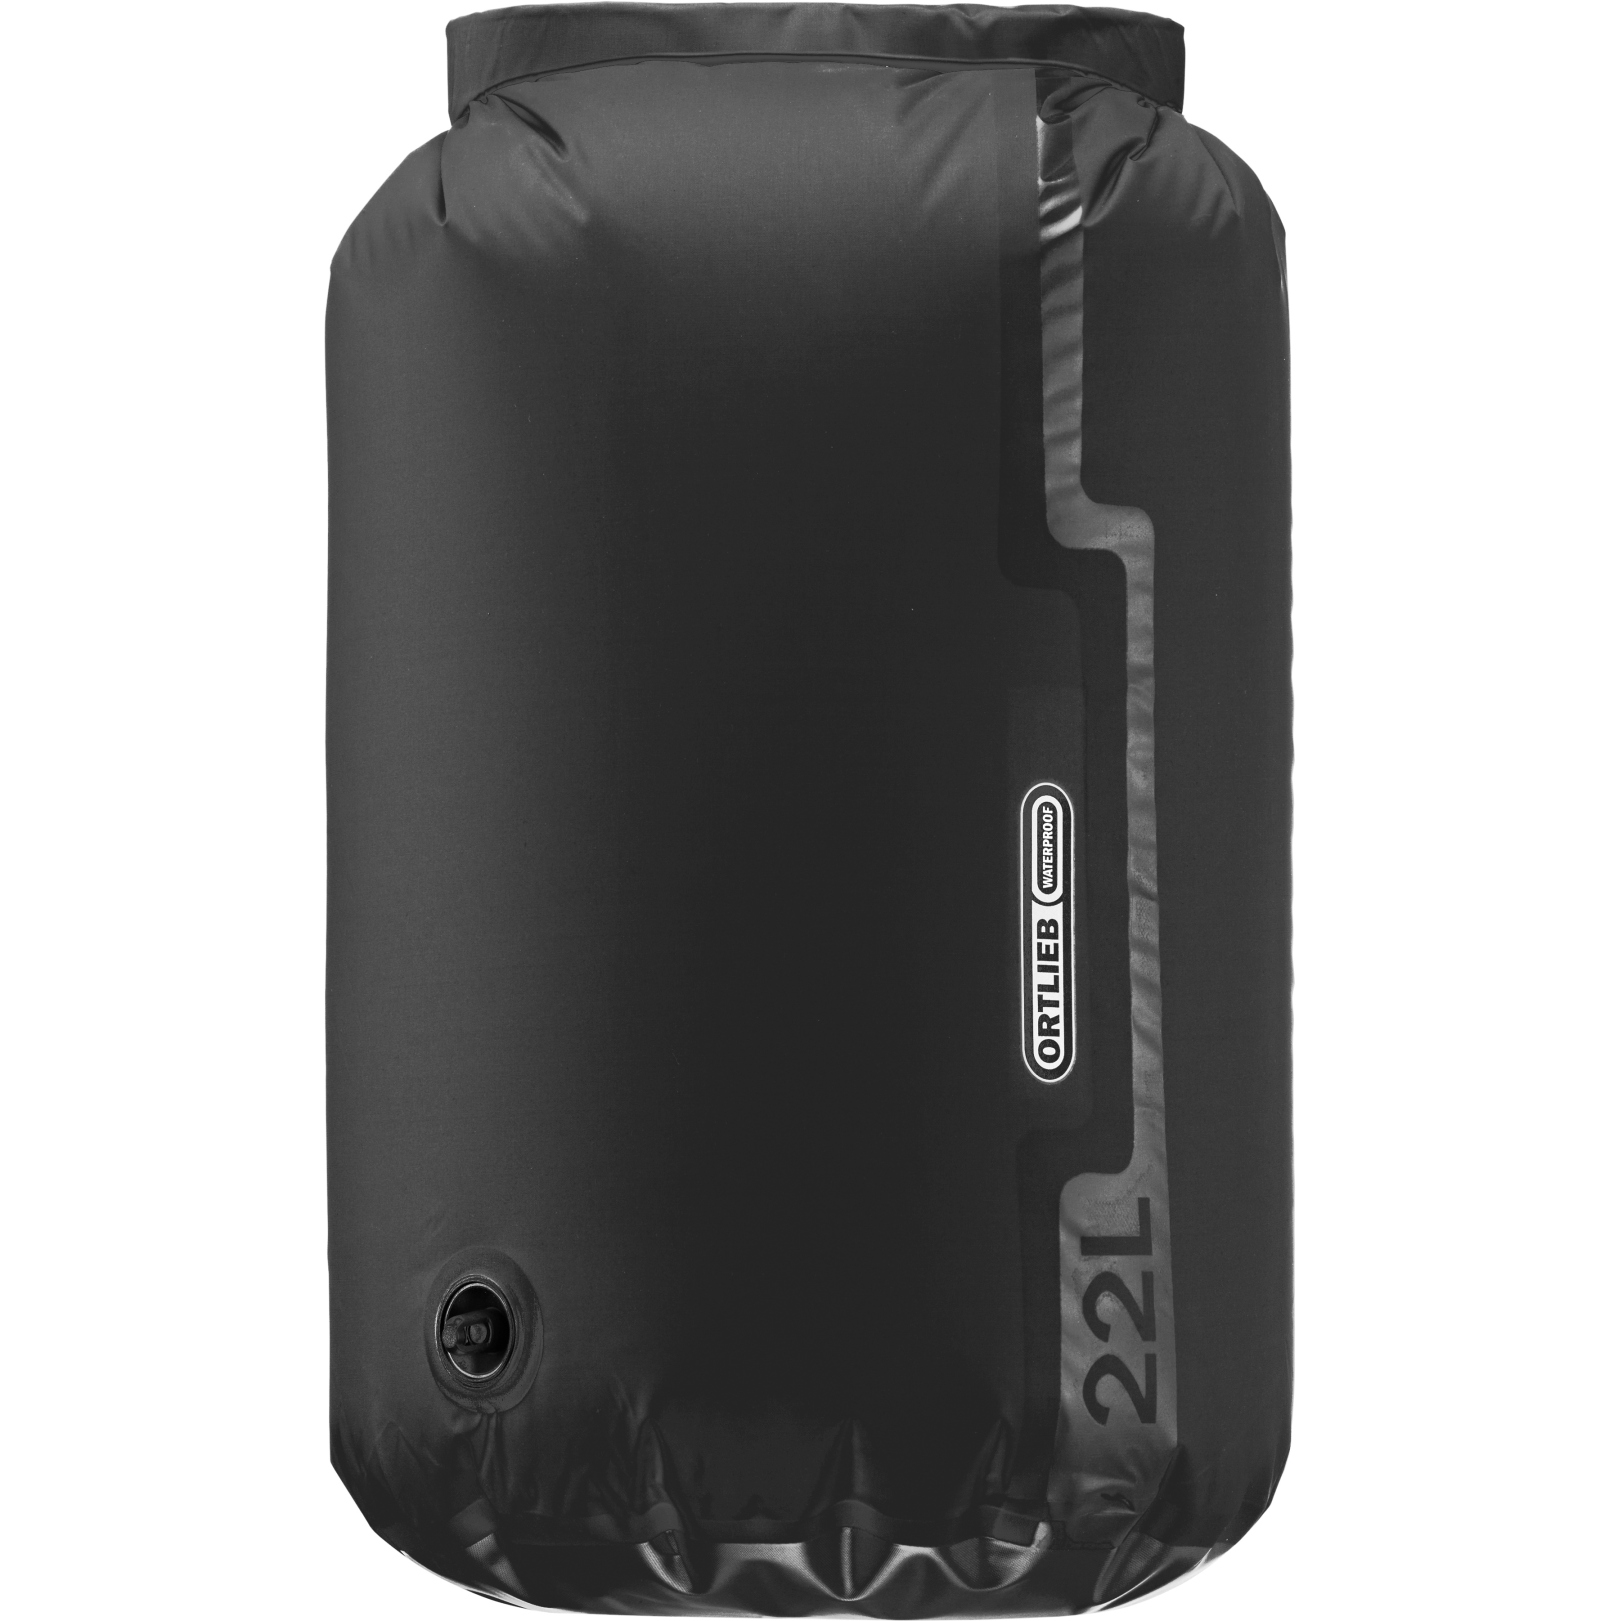 Produktbild von ORTLIEB Dry-Bag Light Valve 22L Packsack - schwarz